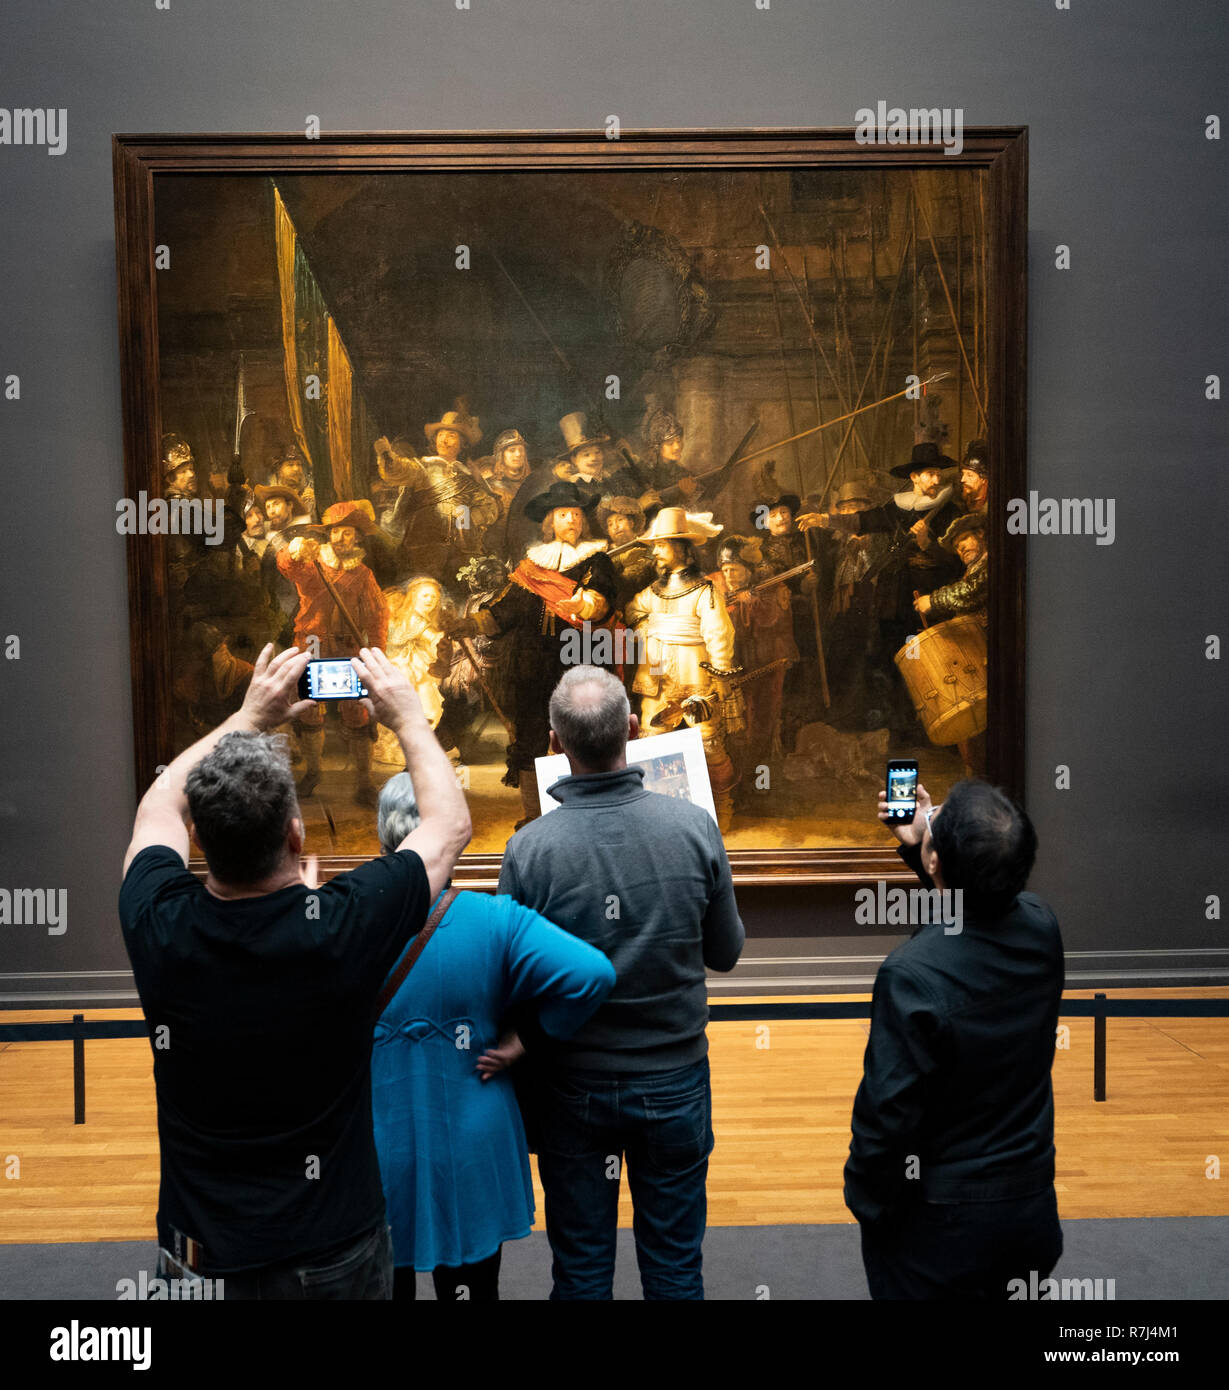 La Ronde de nuit de Rembrandt van Rijn peinture au Rijksmuseum à Amsterdam, Pays-Bas Banque D'Images